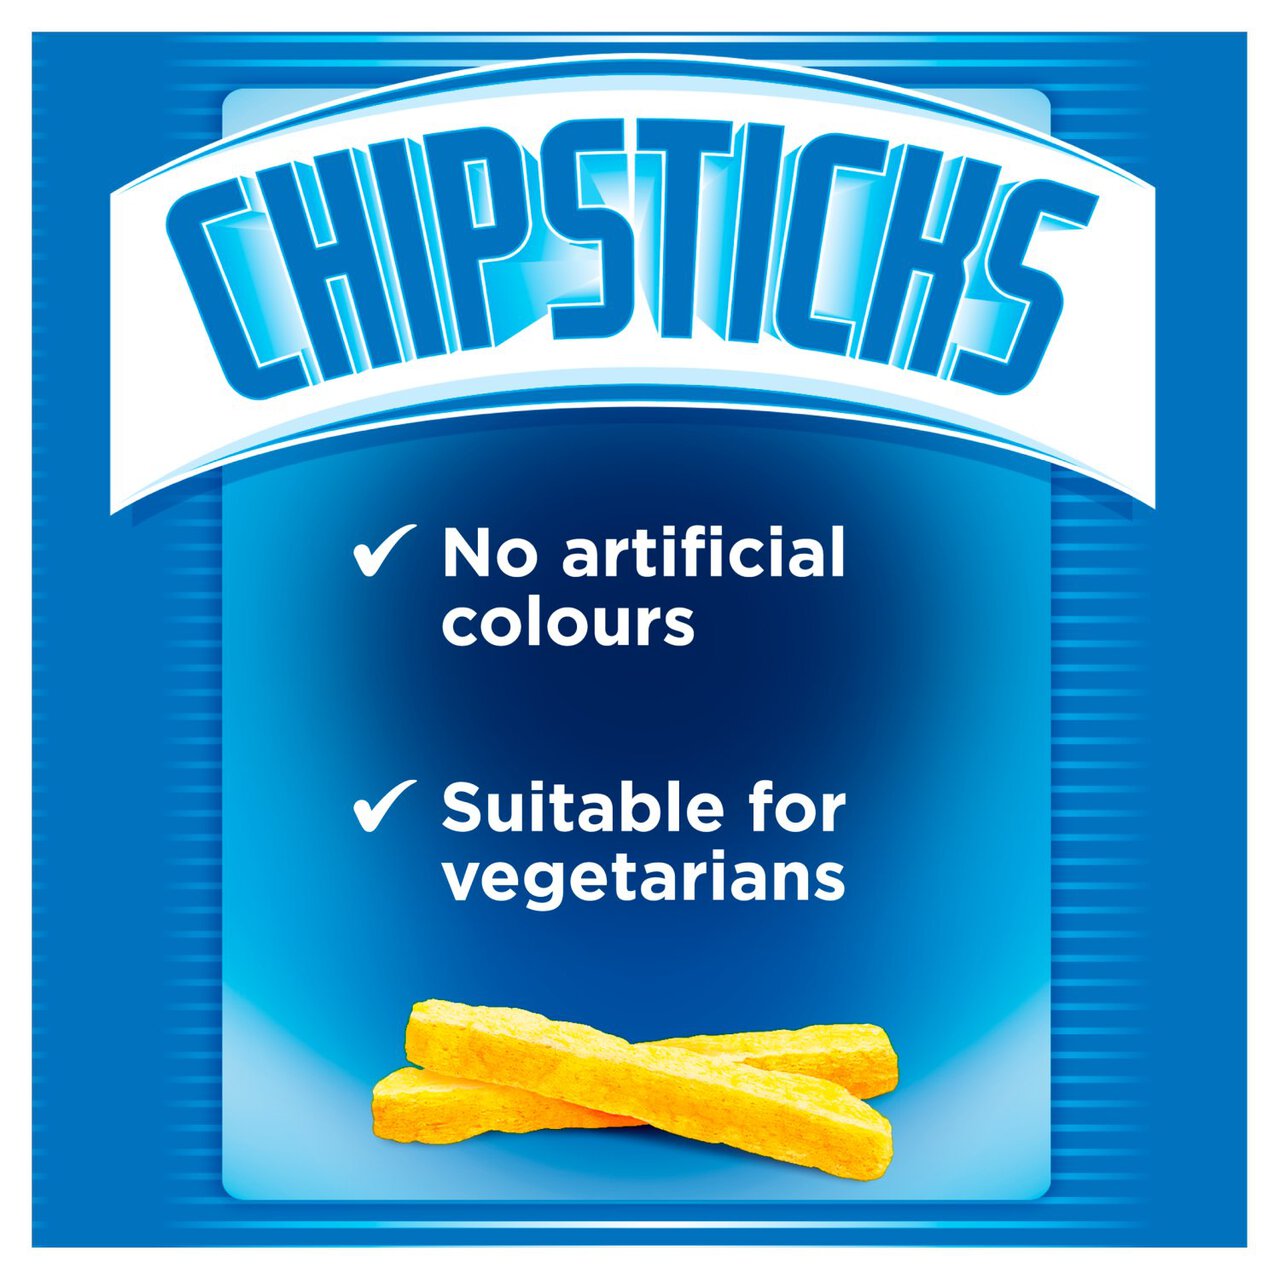 Smiths Chipsticks Salt & Vinegar Multipack Snacks 6 per pack